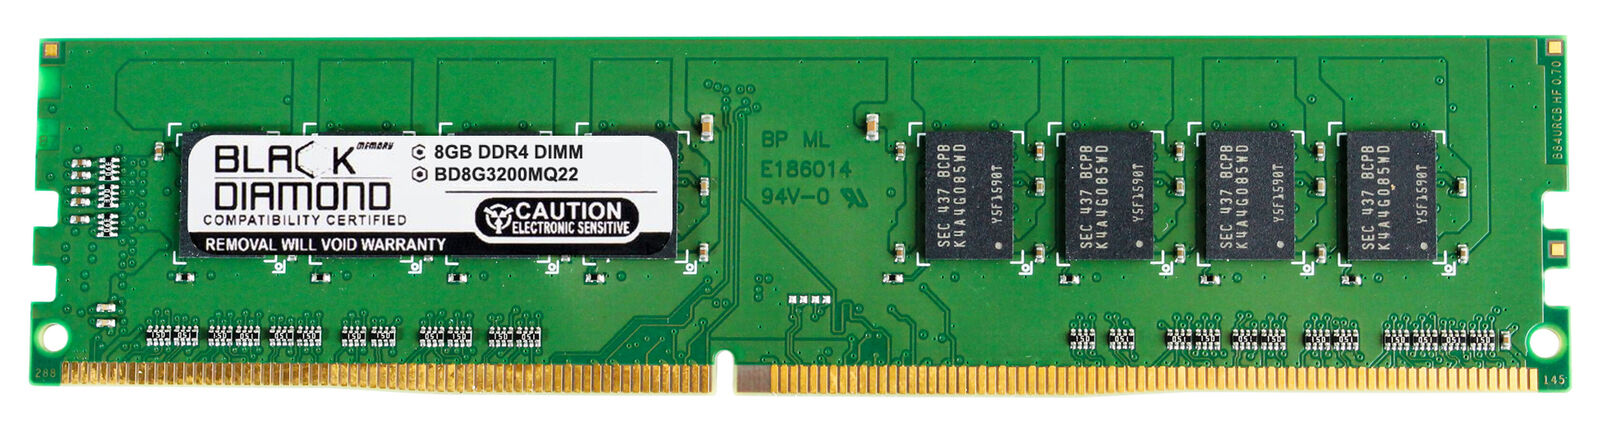 8GB Memory Gigabyte Motherboards GA-Gaming B8 GA-P110-D3 GA-Q170M-D3H-GSM